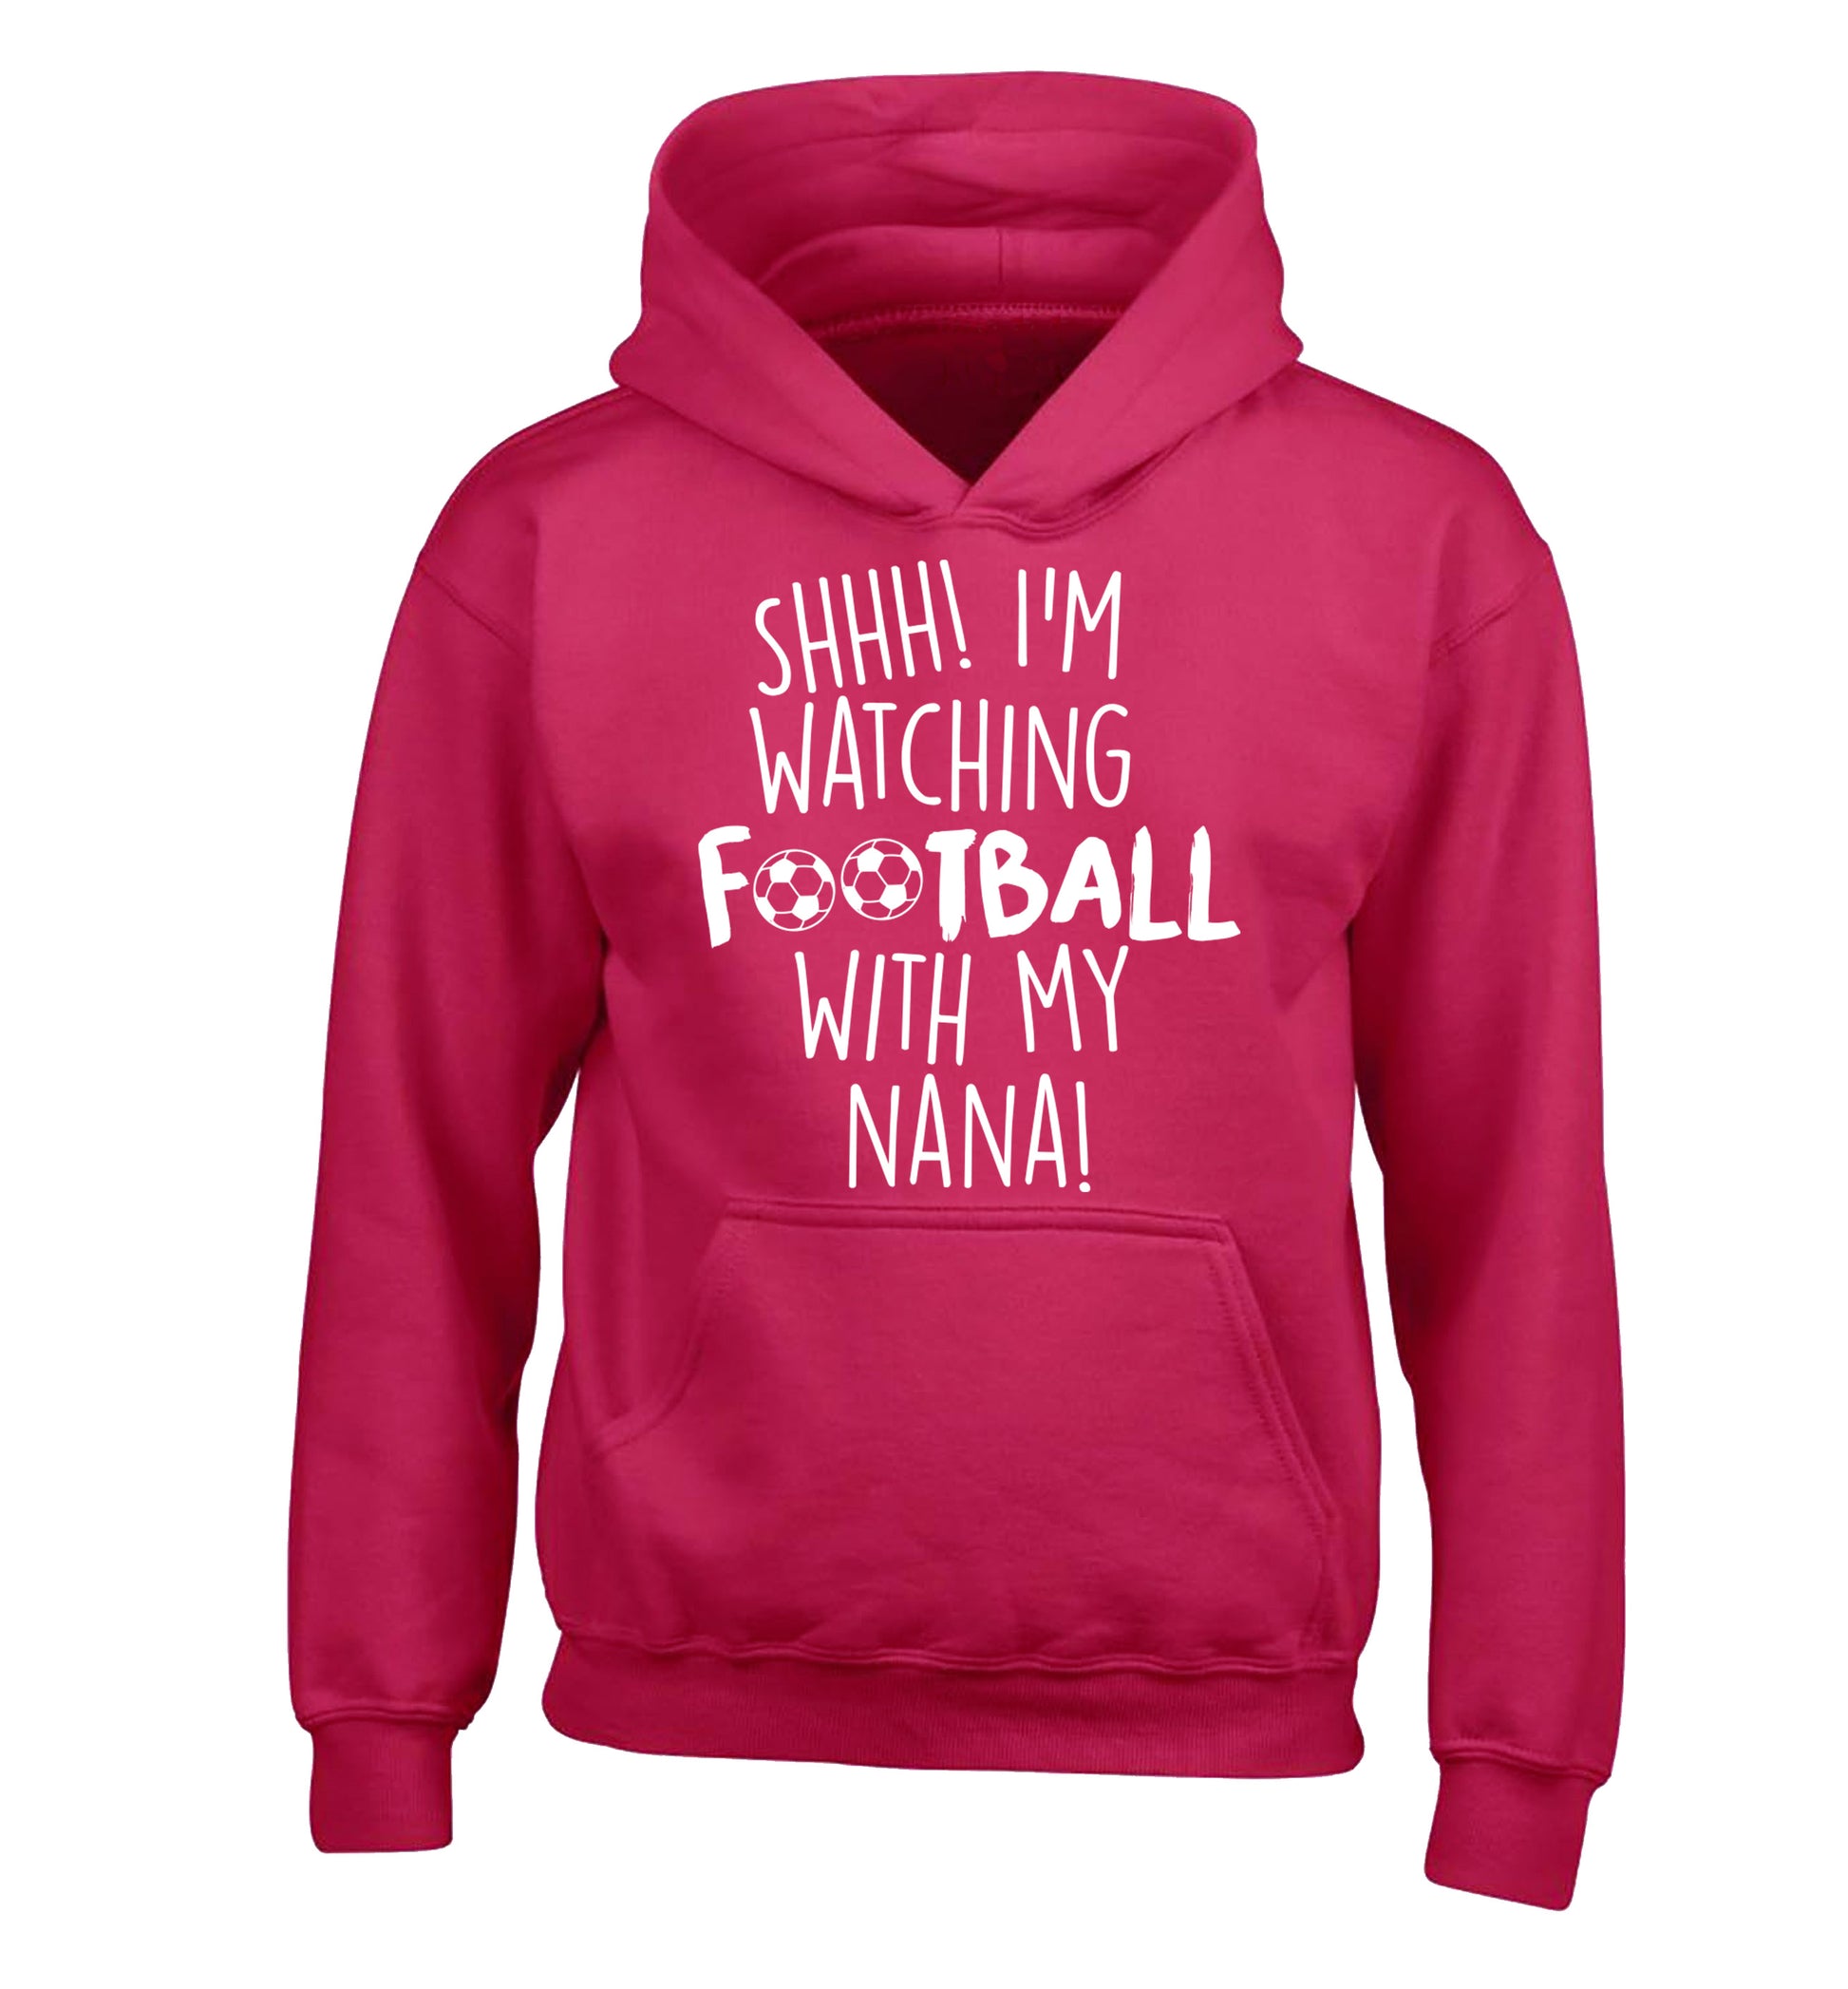 Shhh I'm watching football with my nana children's pink hoodie 12-14 Years